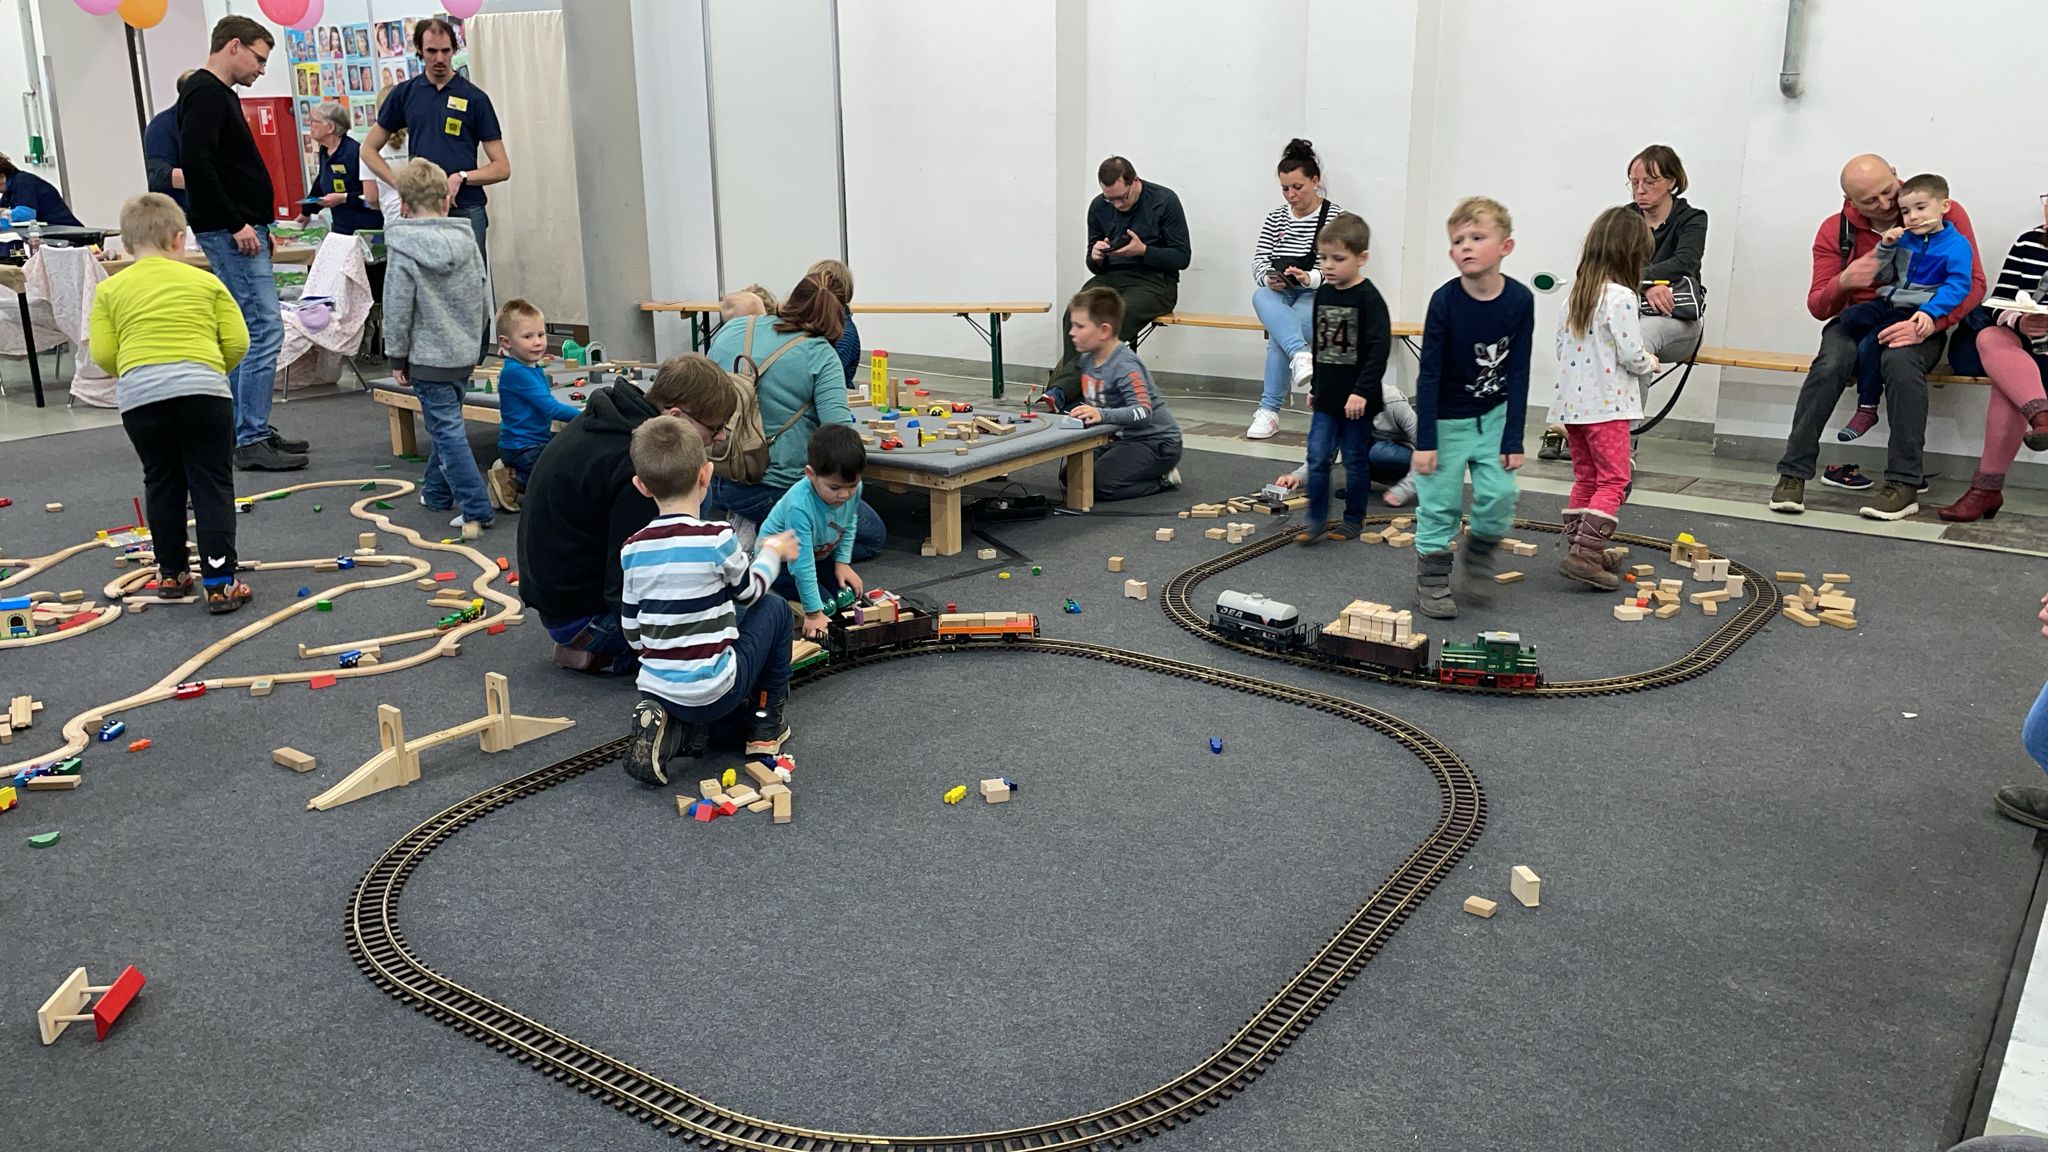 Kinderspiel - "Wiese" mit LGB Bahn zum ausprobieren und fahren. 